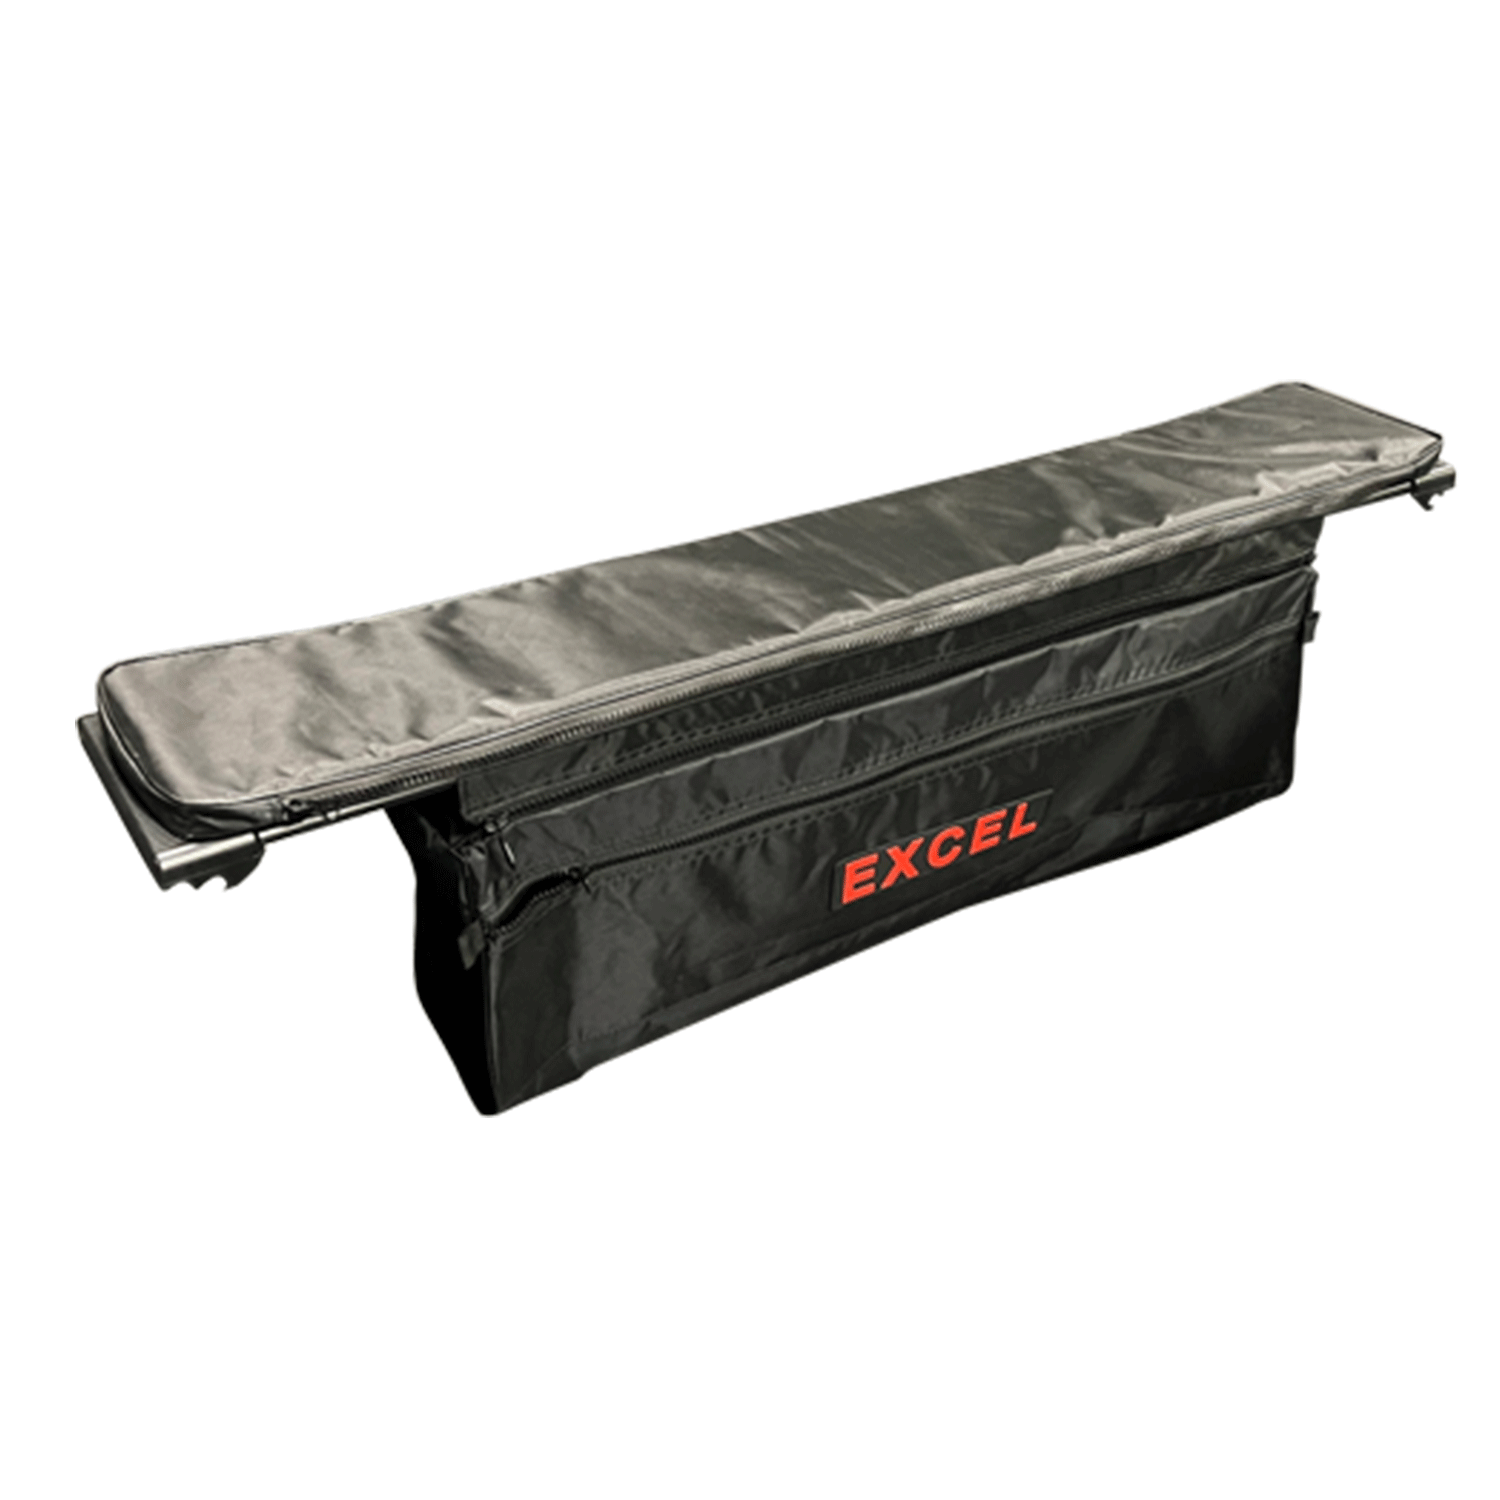 EXCEL-Seat-Cushion-Storage-Bag-Large-Black